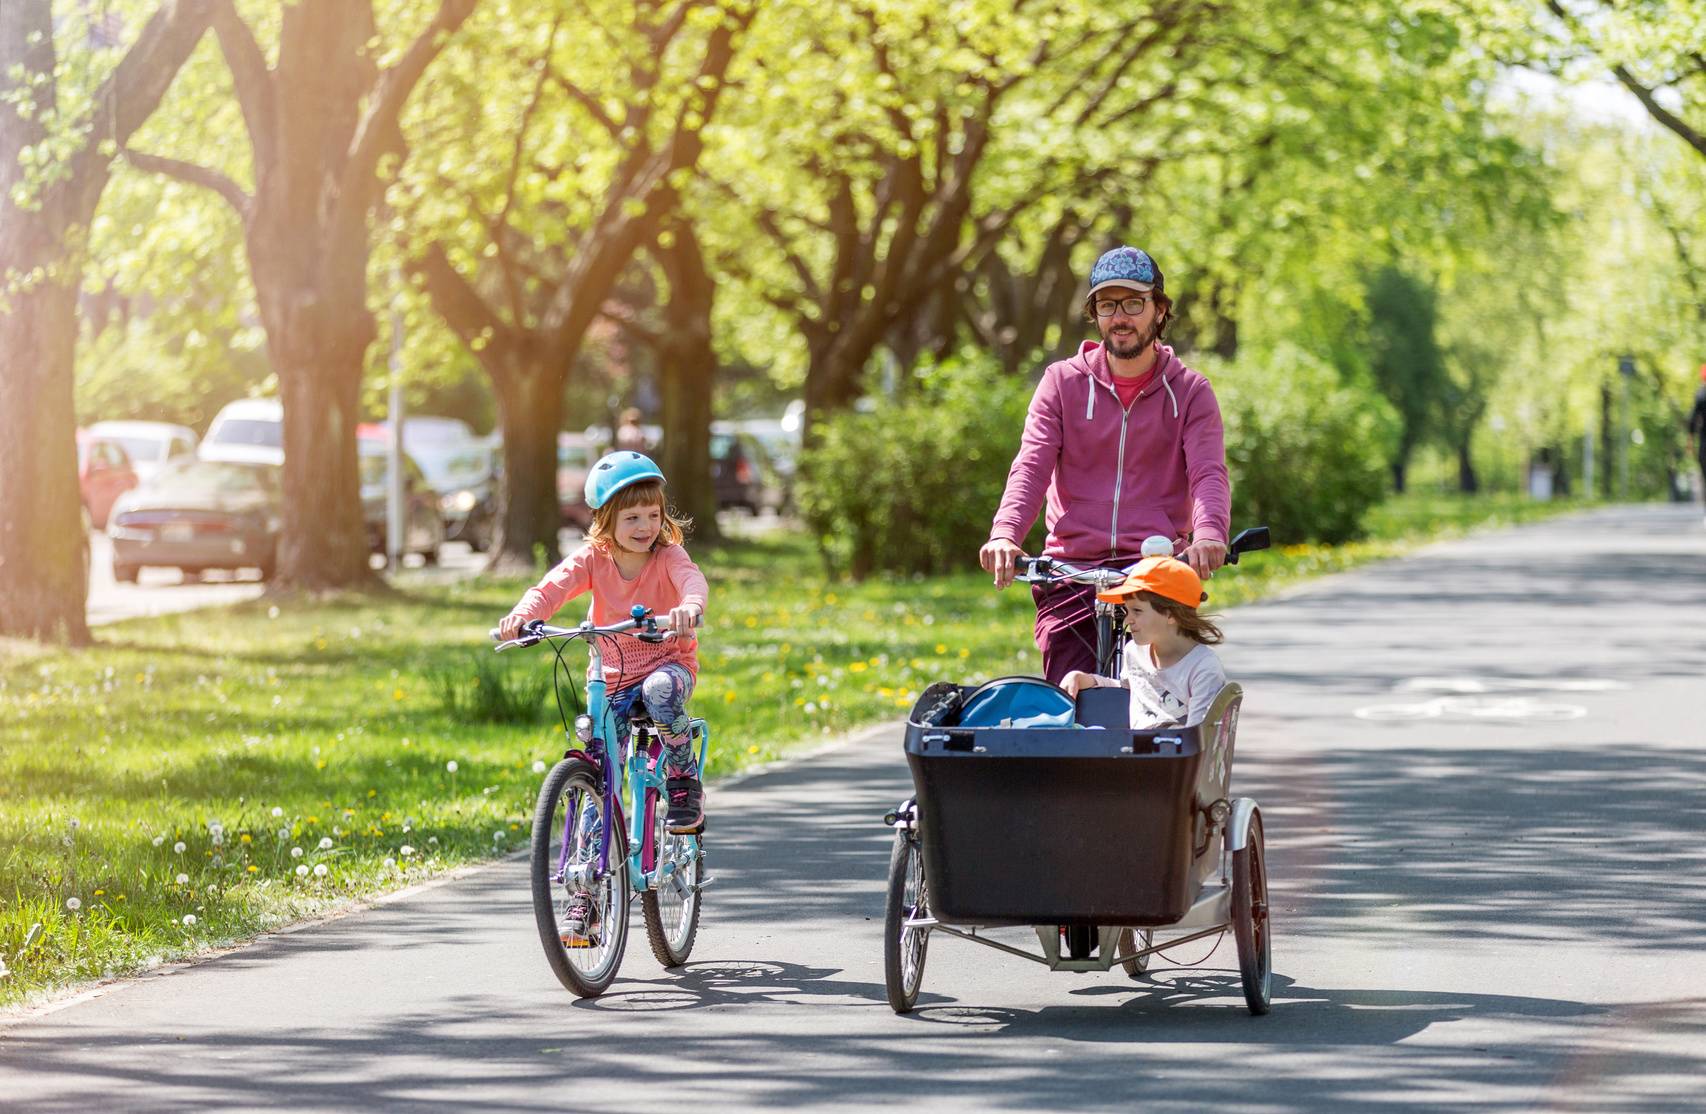 Przyczepka do roweru dla dziecka. Tata wiezie dziecko w przyczepce, obok jedzie córeczka na rowerze.